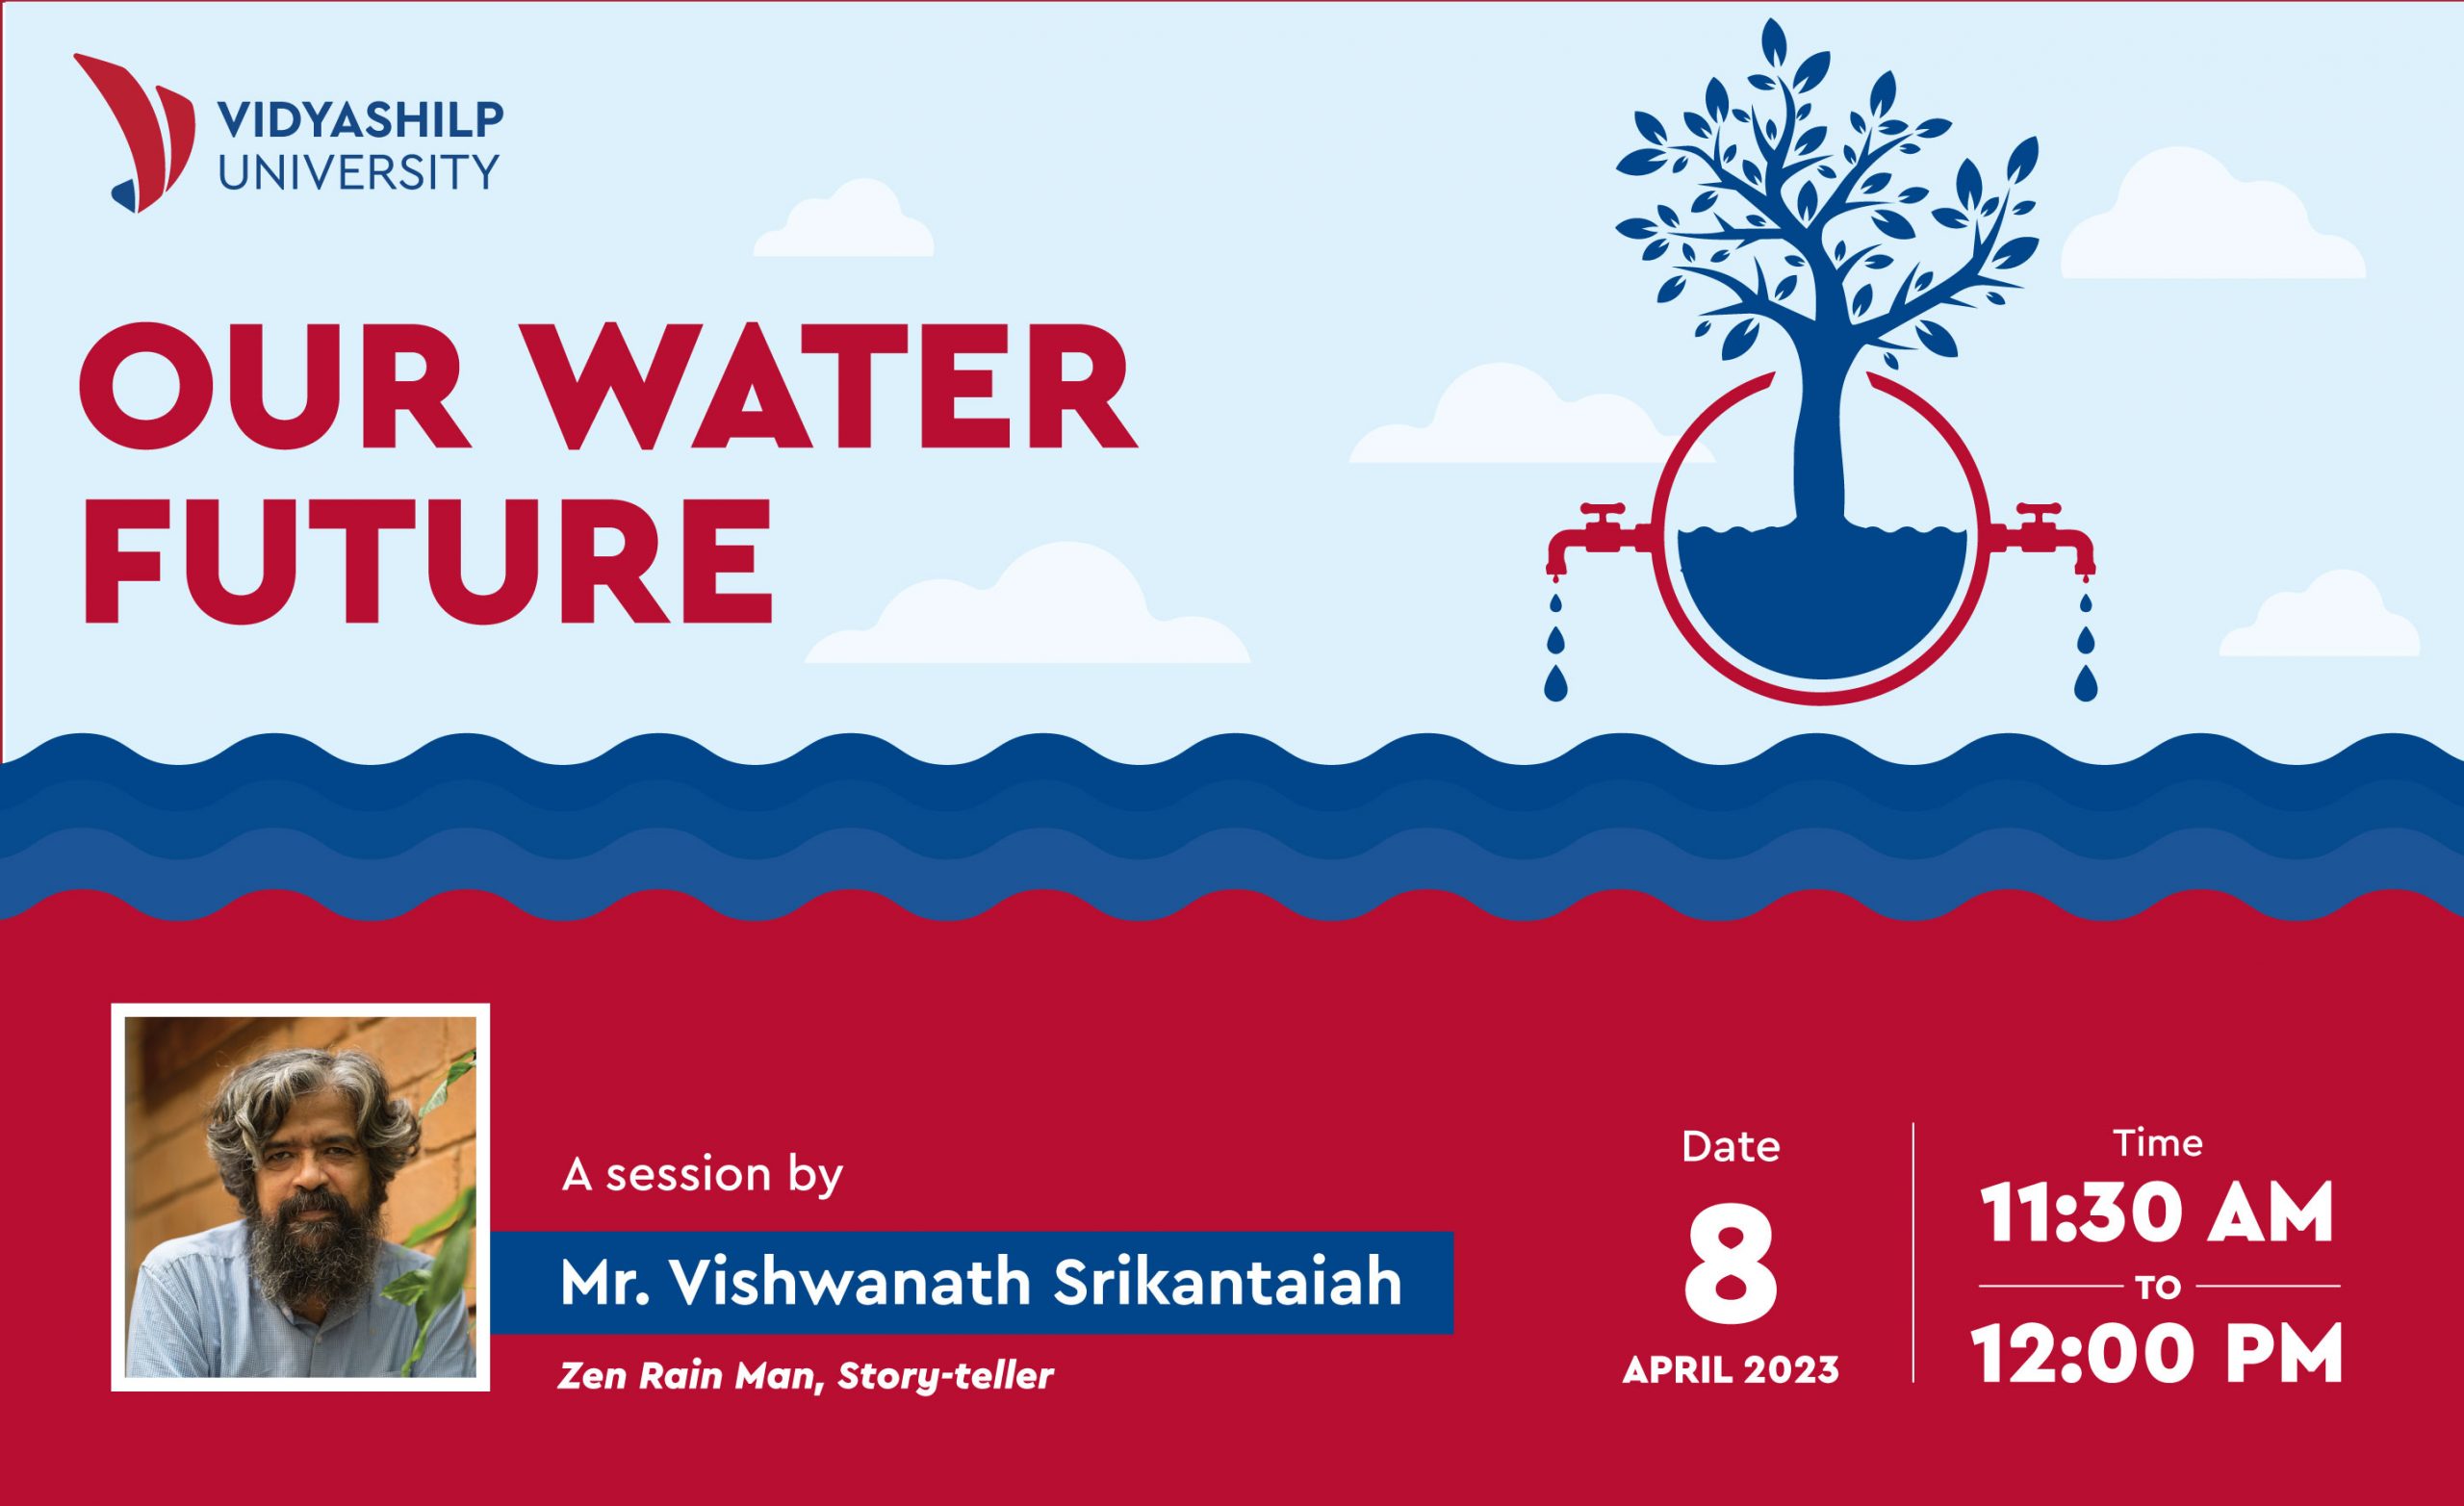 Our Water Future: Vidyashilp University